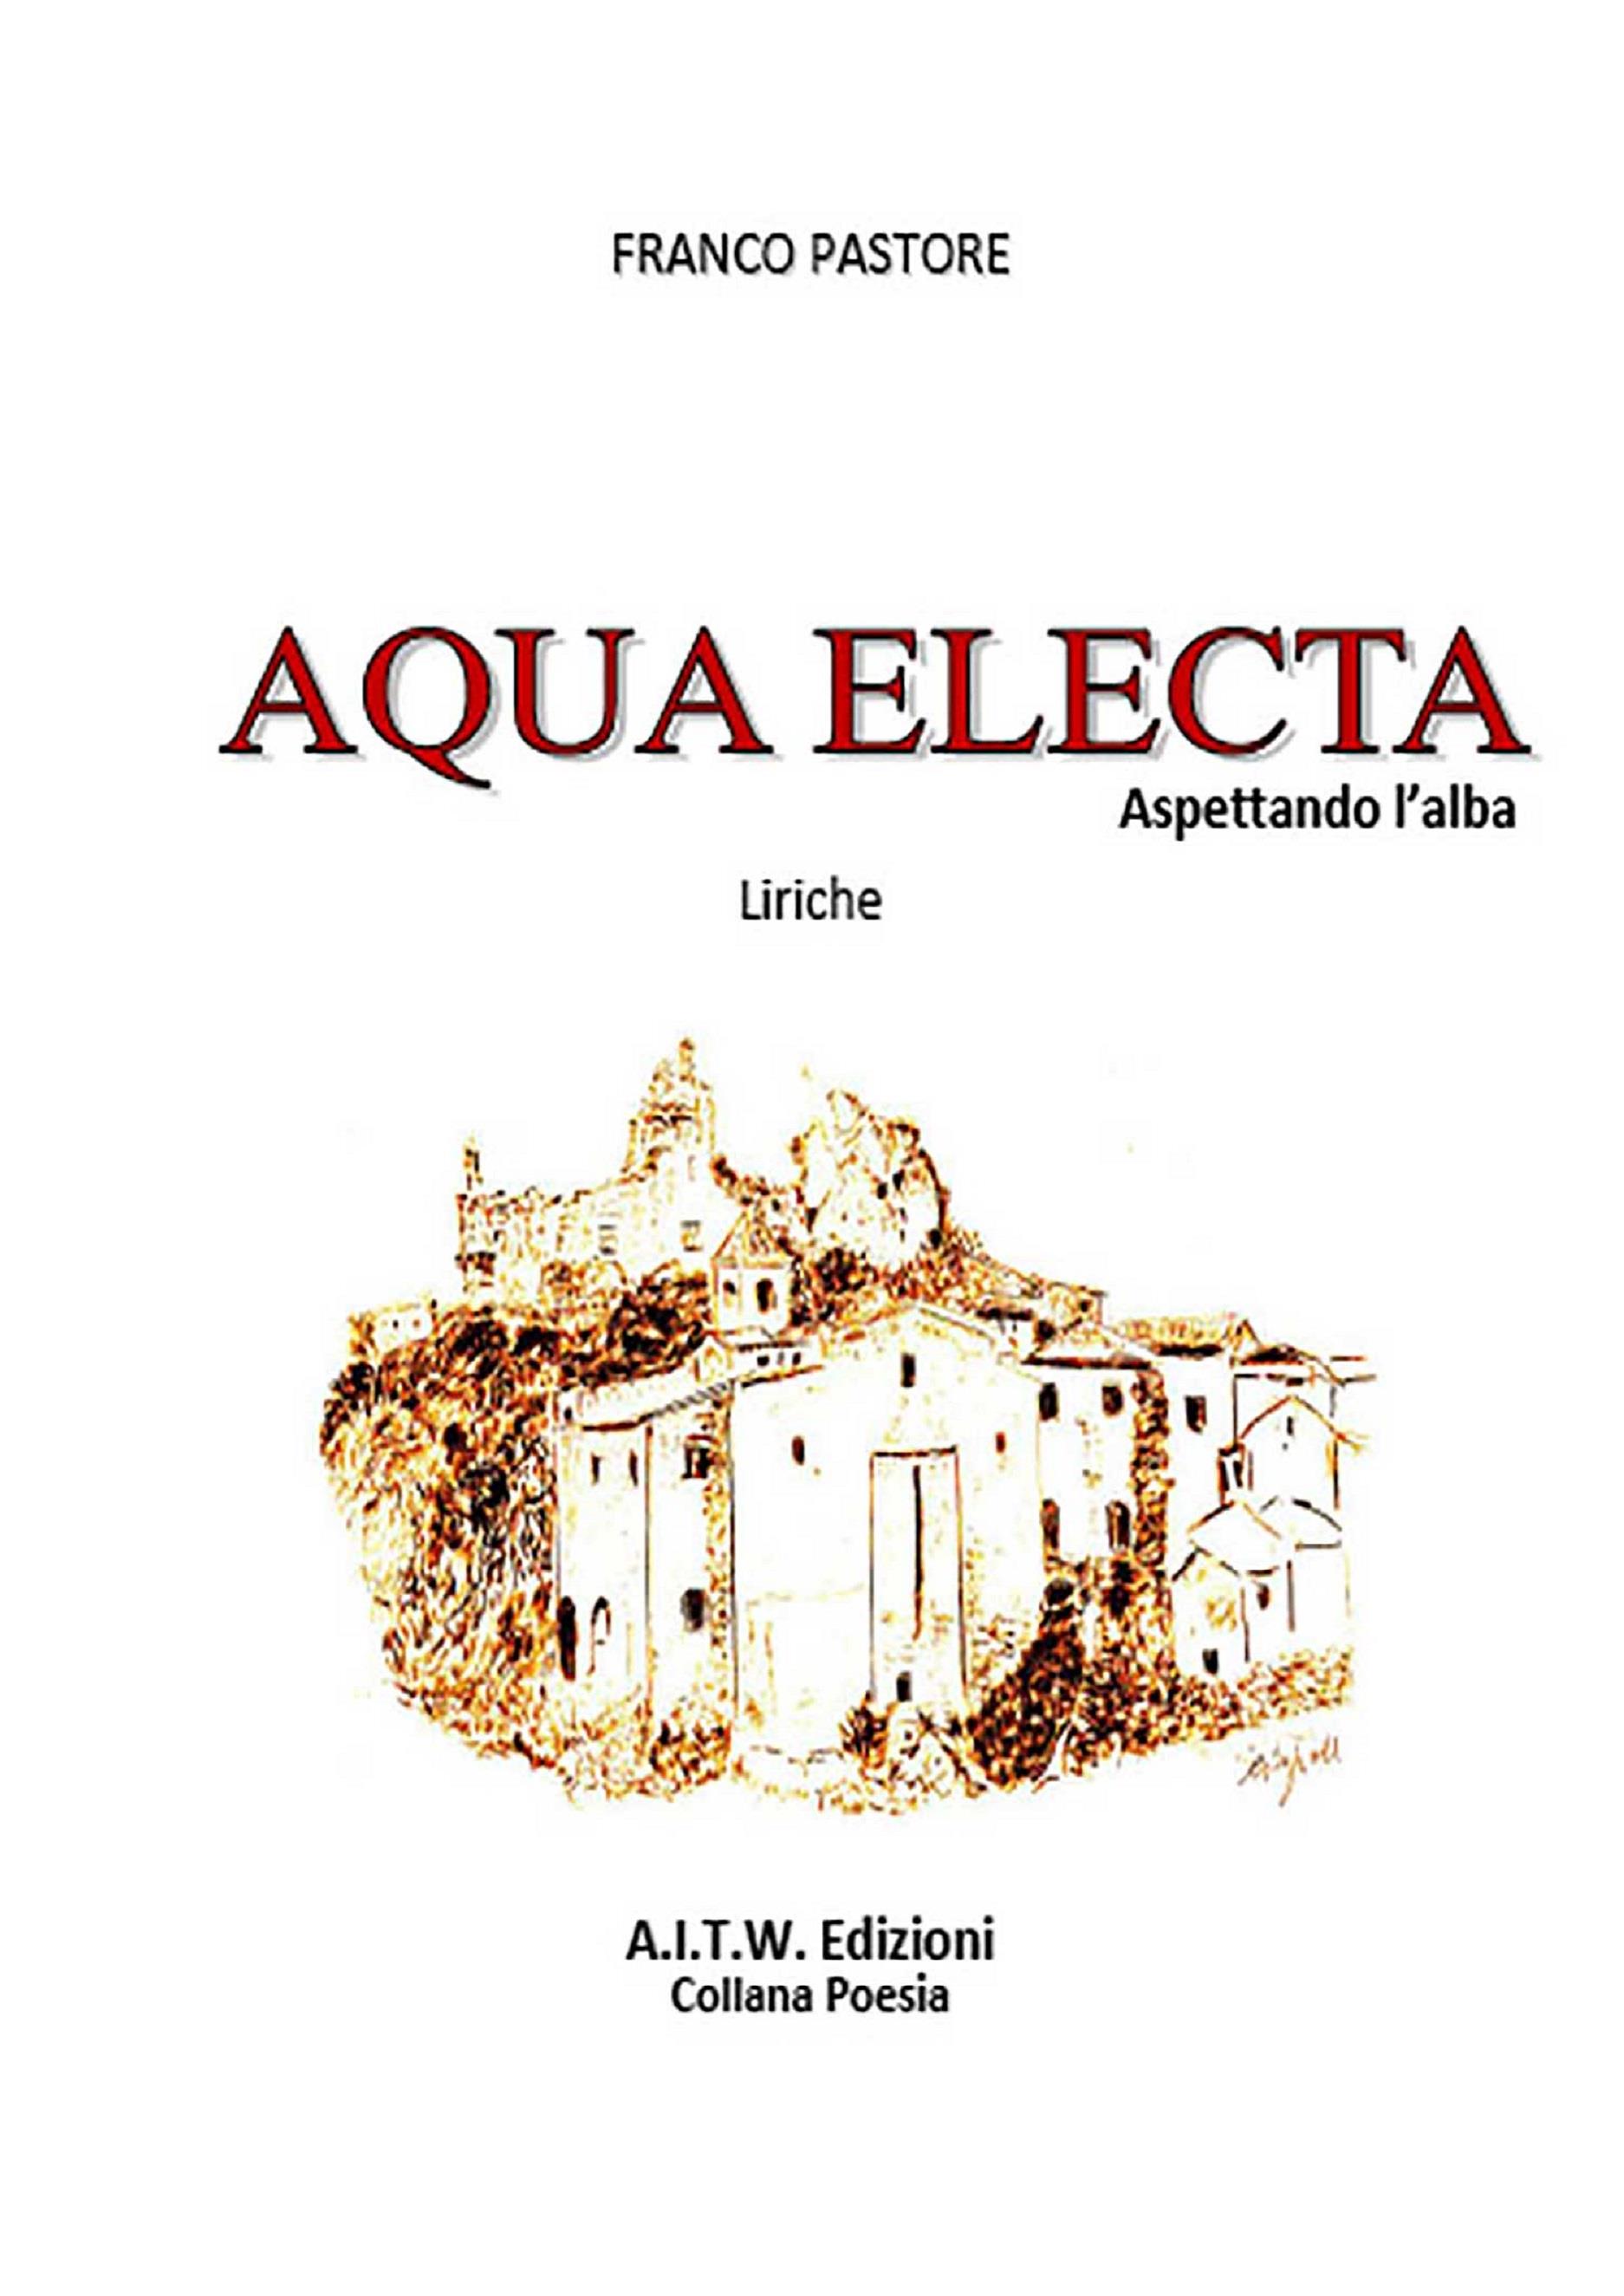 Aqua Electa